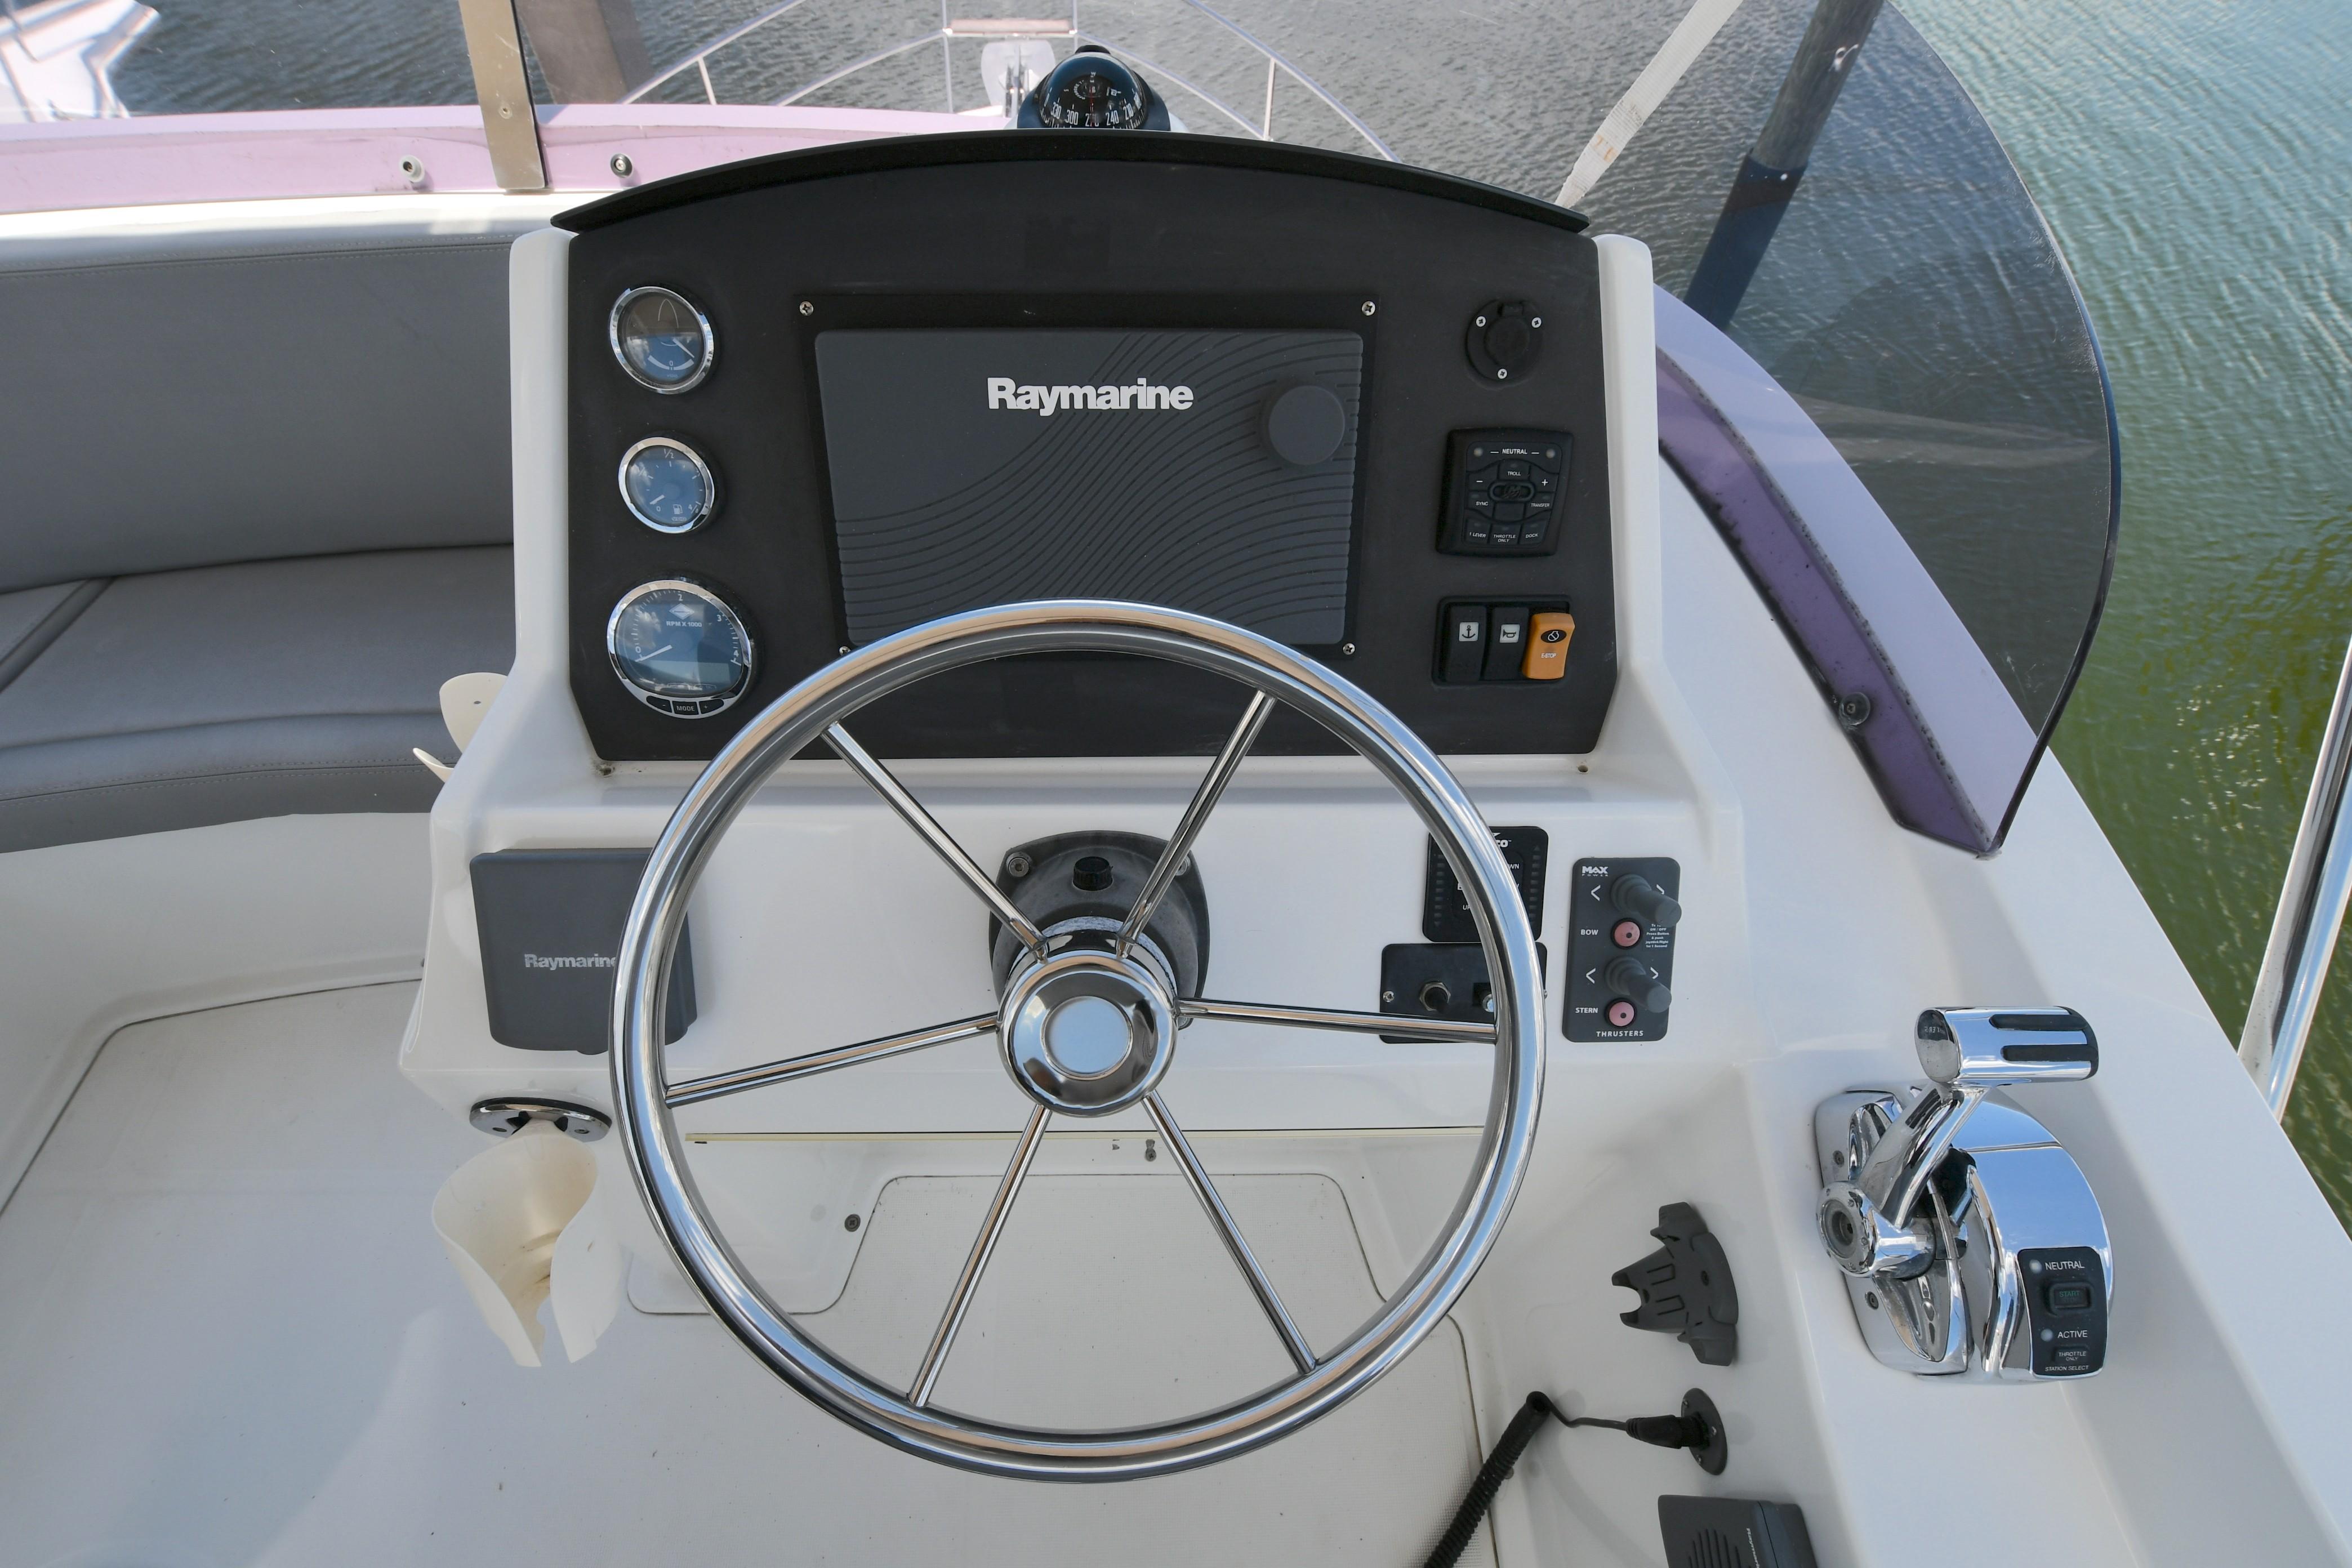 2011 Beneteau Swift Trawler 34